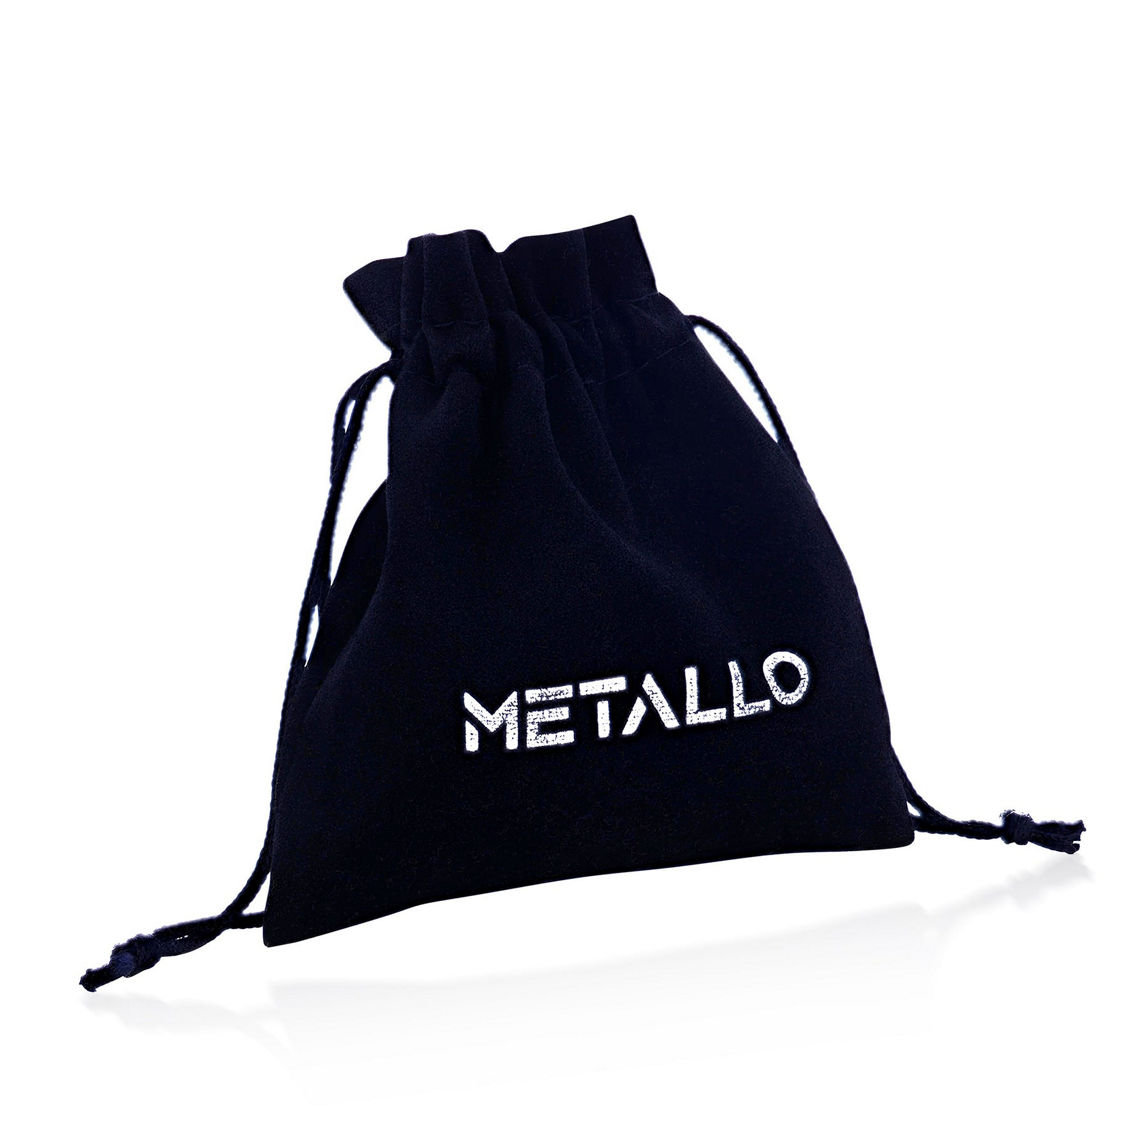 Metallo Stainless Steel 13mm Greek Key Hoop Earrings - Black & Blue - Image 2 of 2